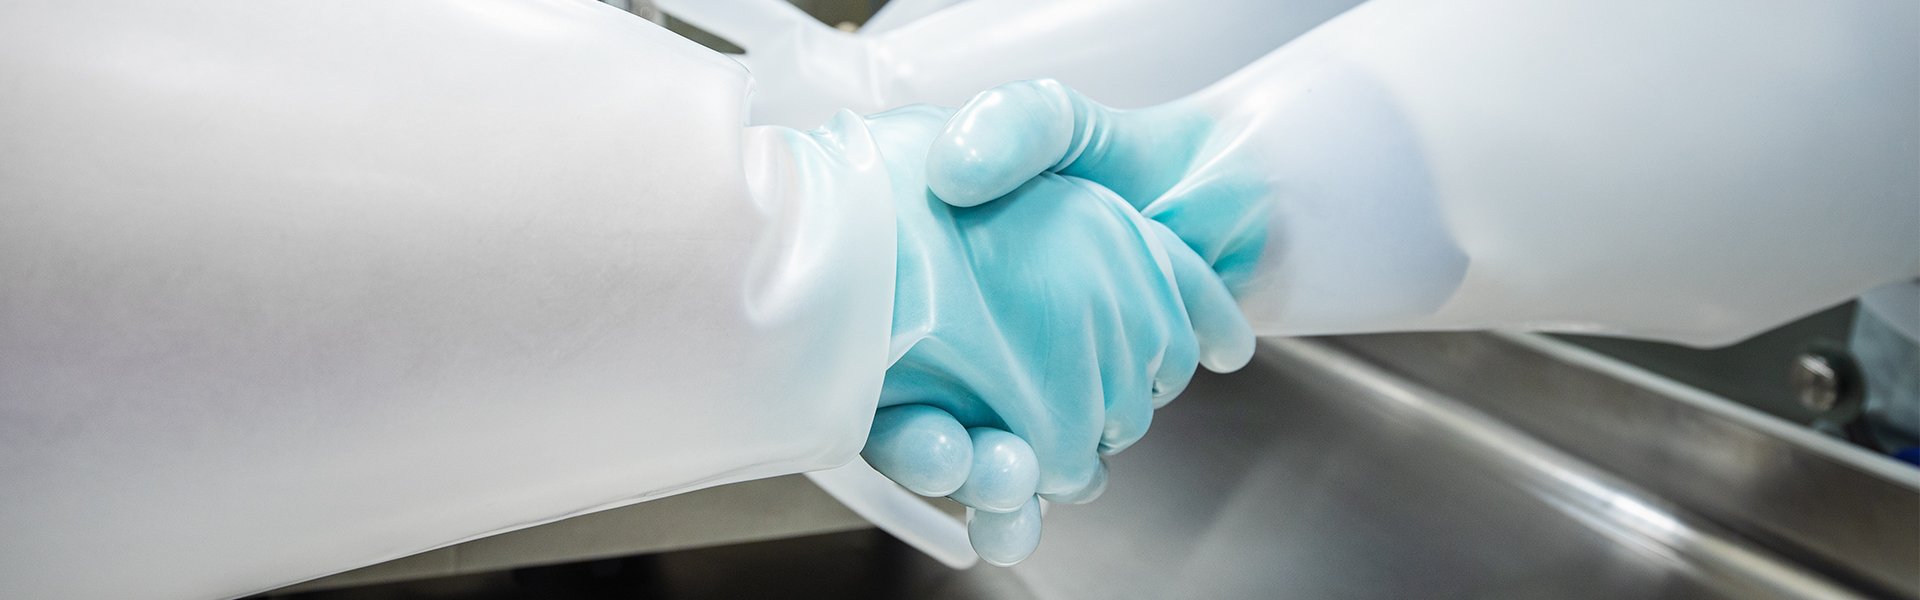 Handshake im Labor mit Schutzkleidung